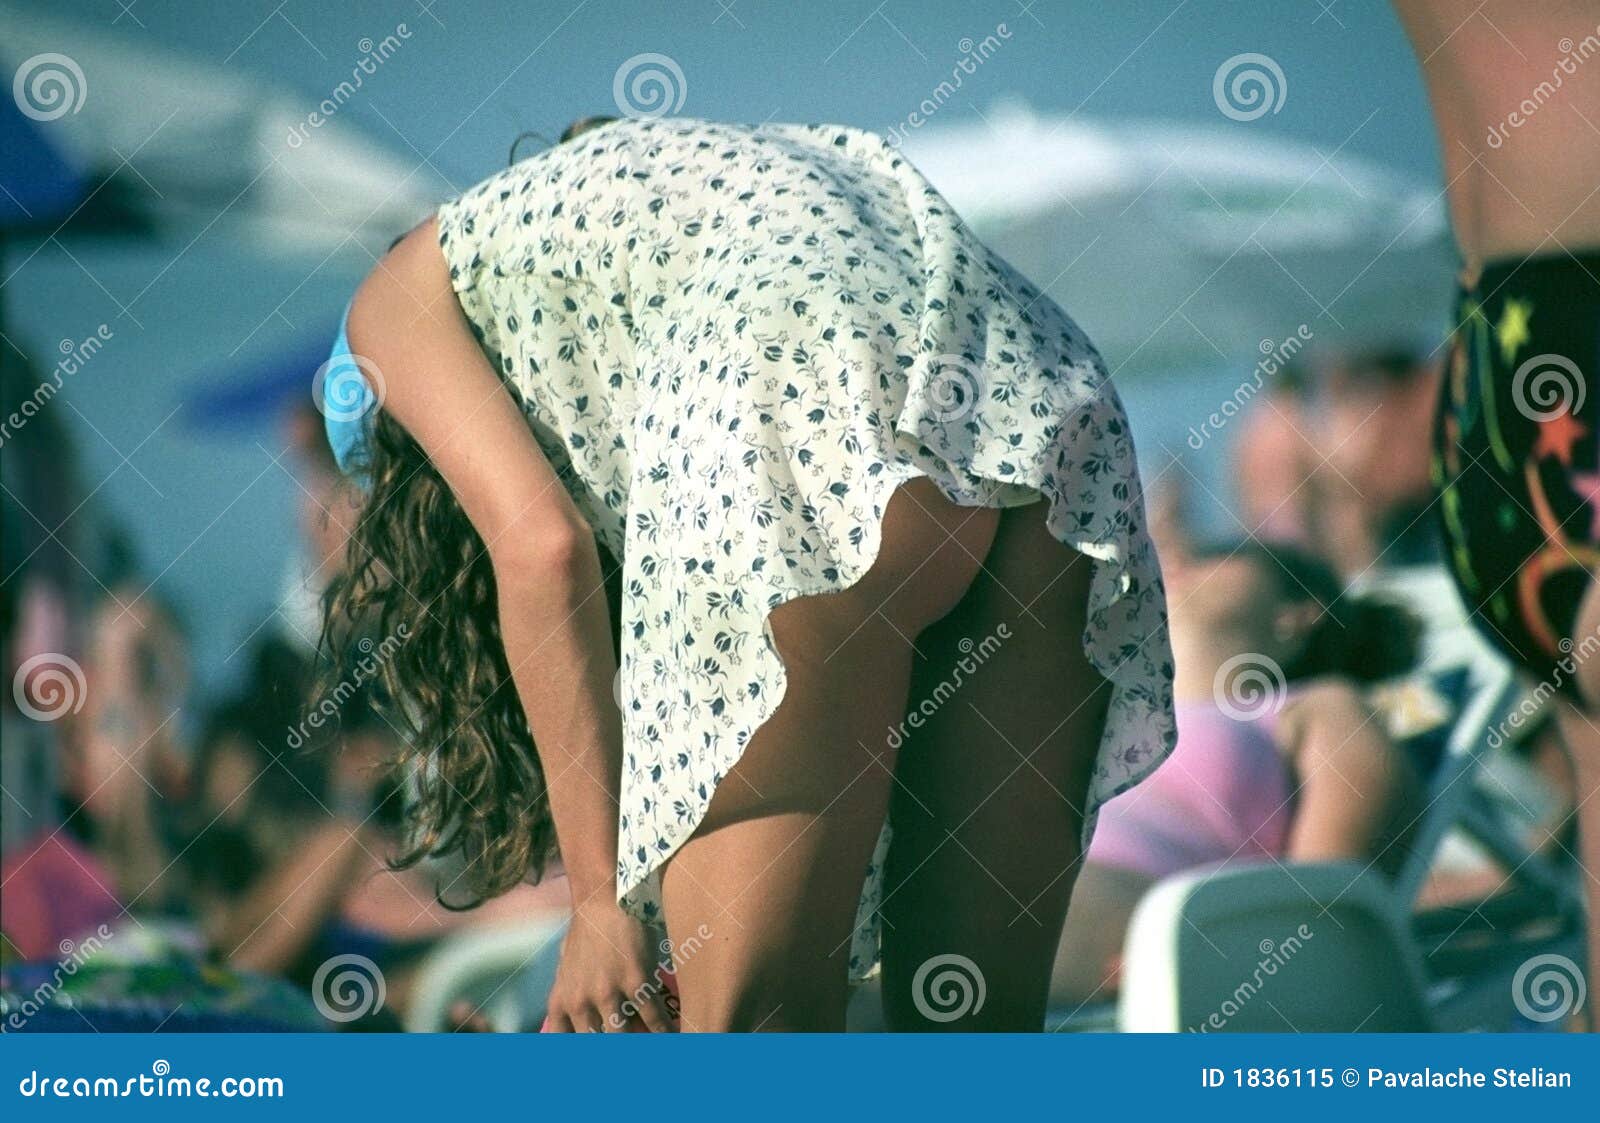 Girl Bending Over Pics